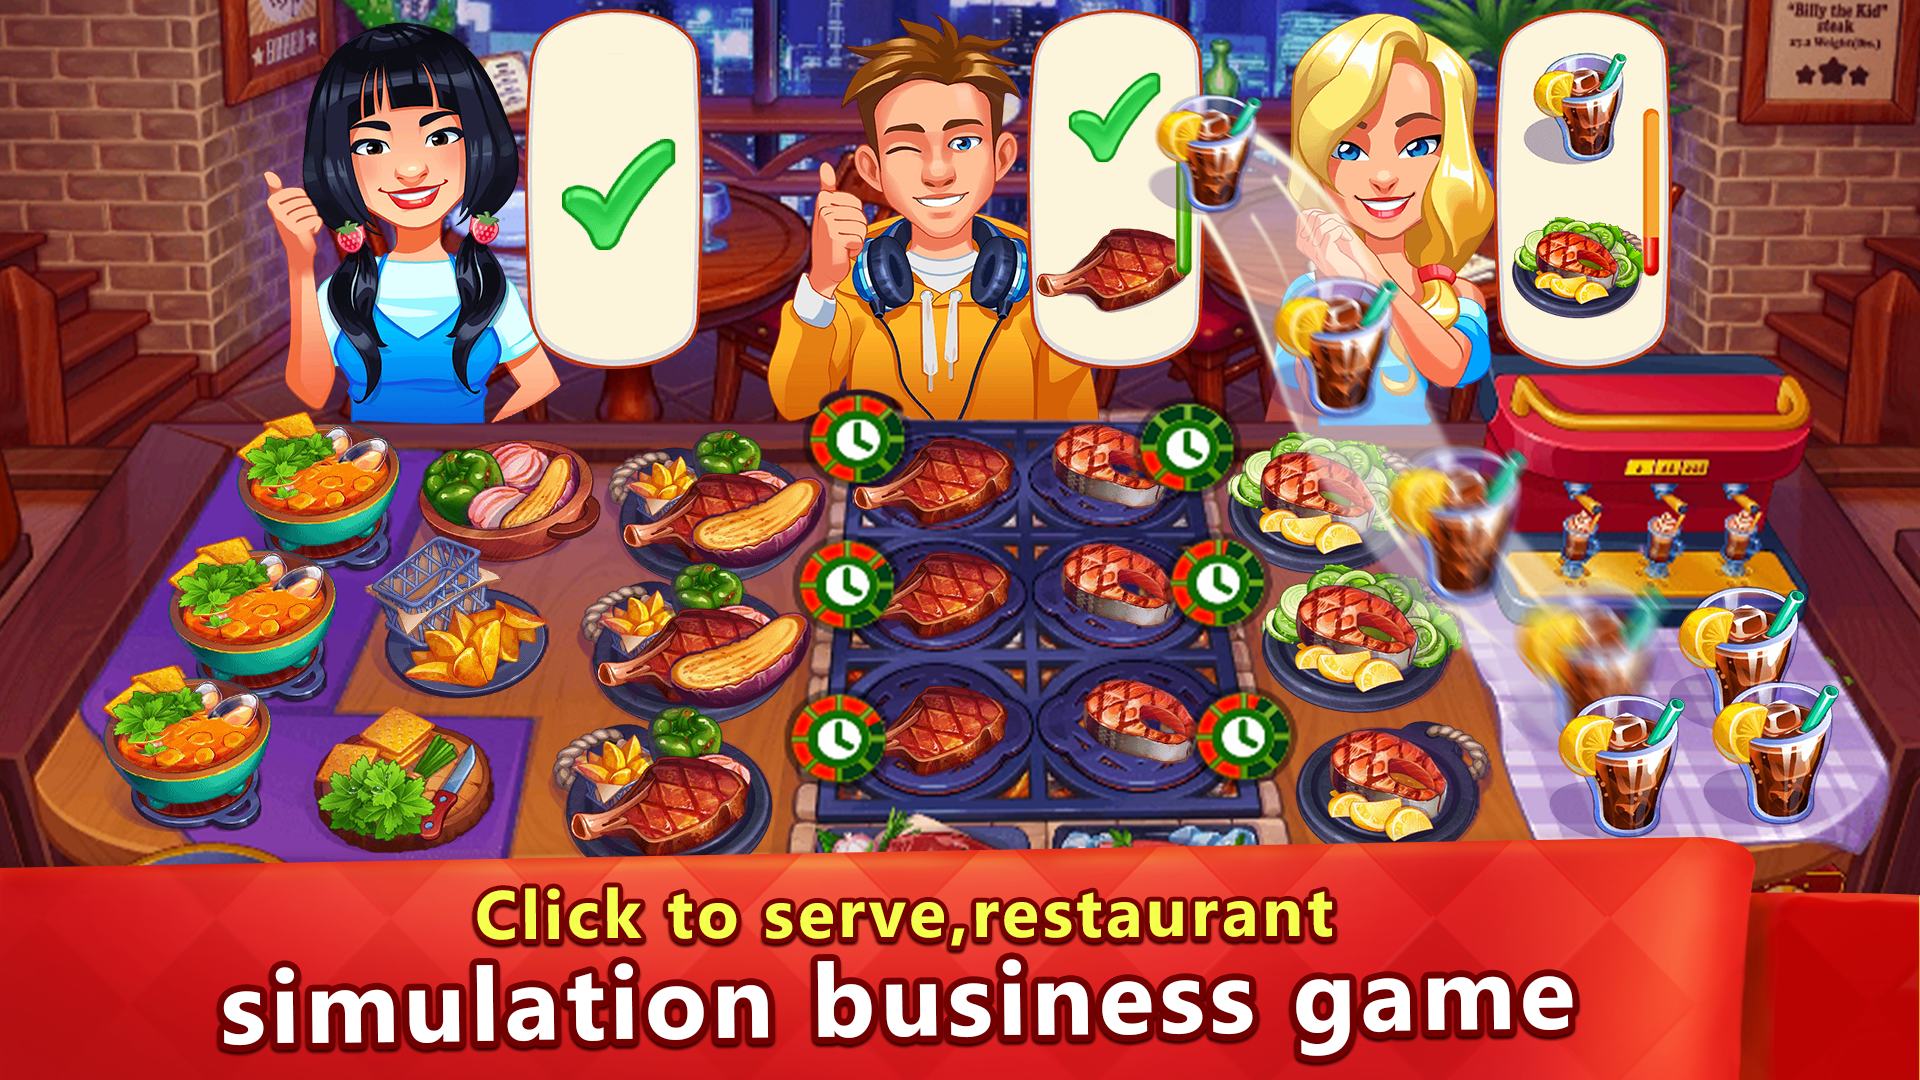 Screenshot 1 of Шеф-повар - Кулинарные игры в ресторане 2.1